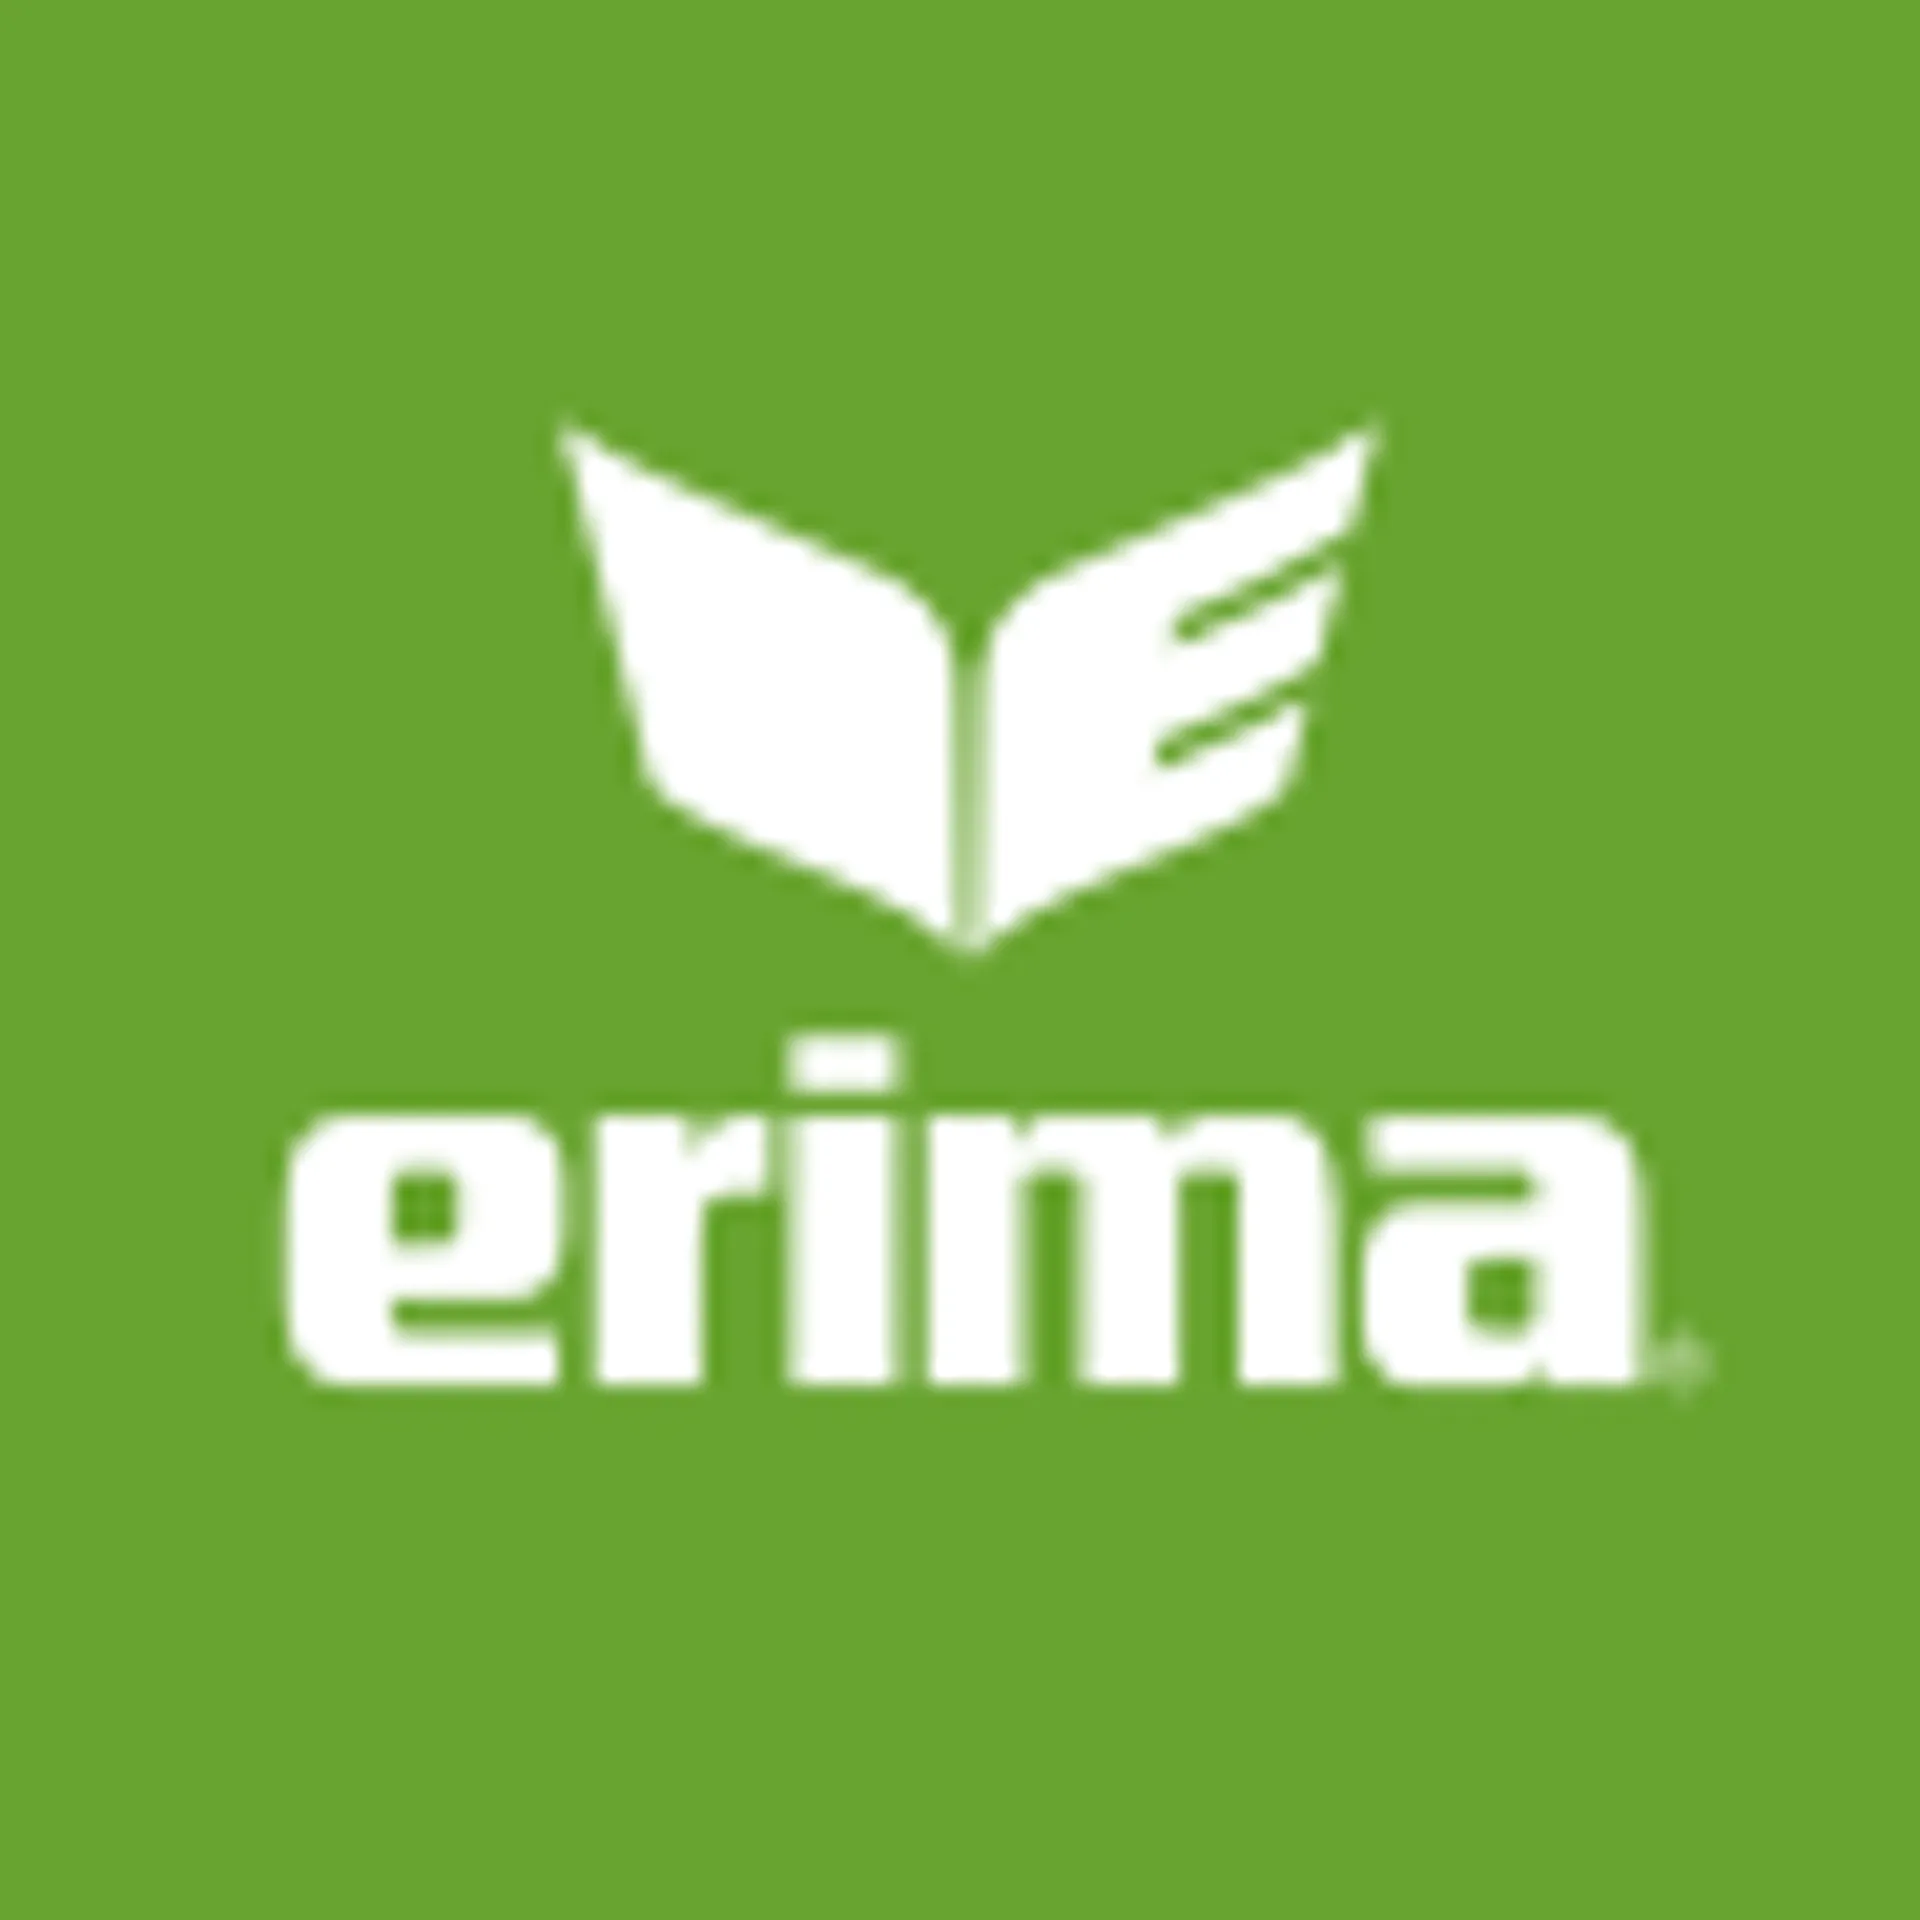 ERIMA logo